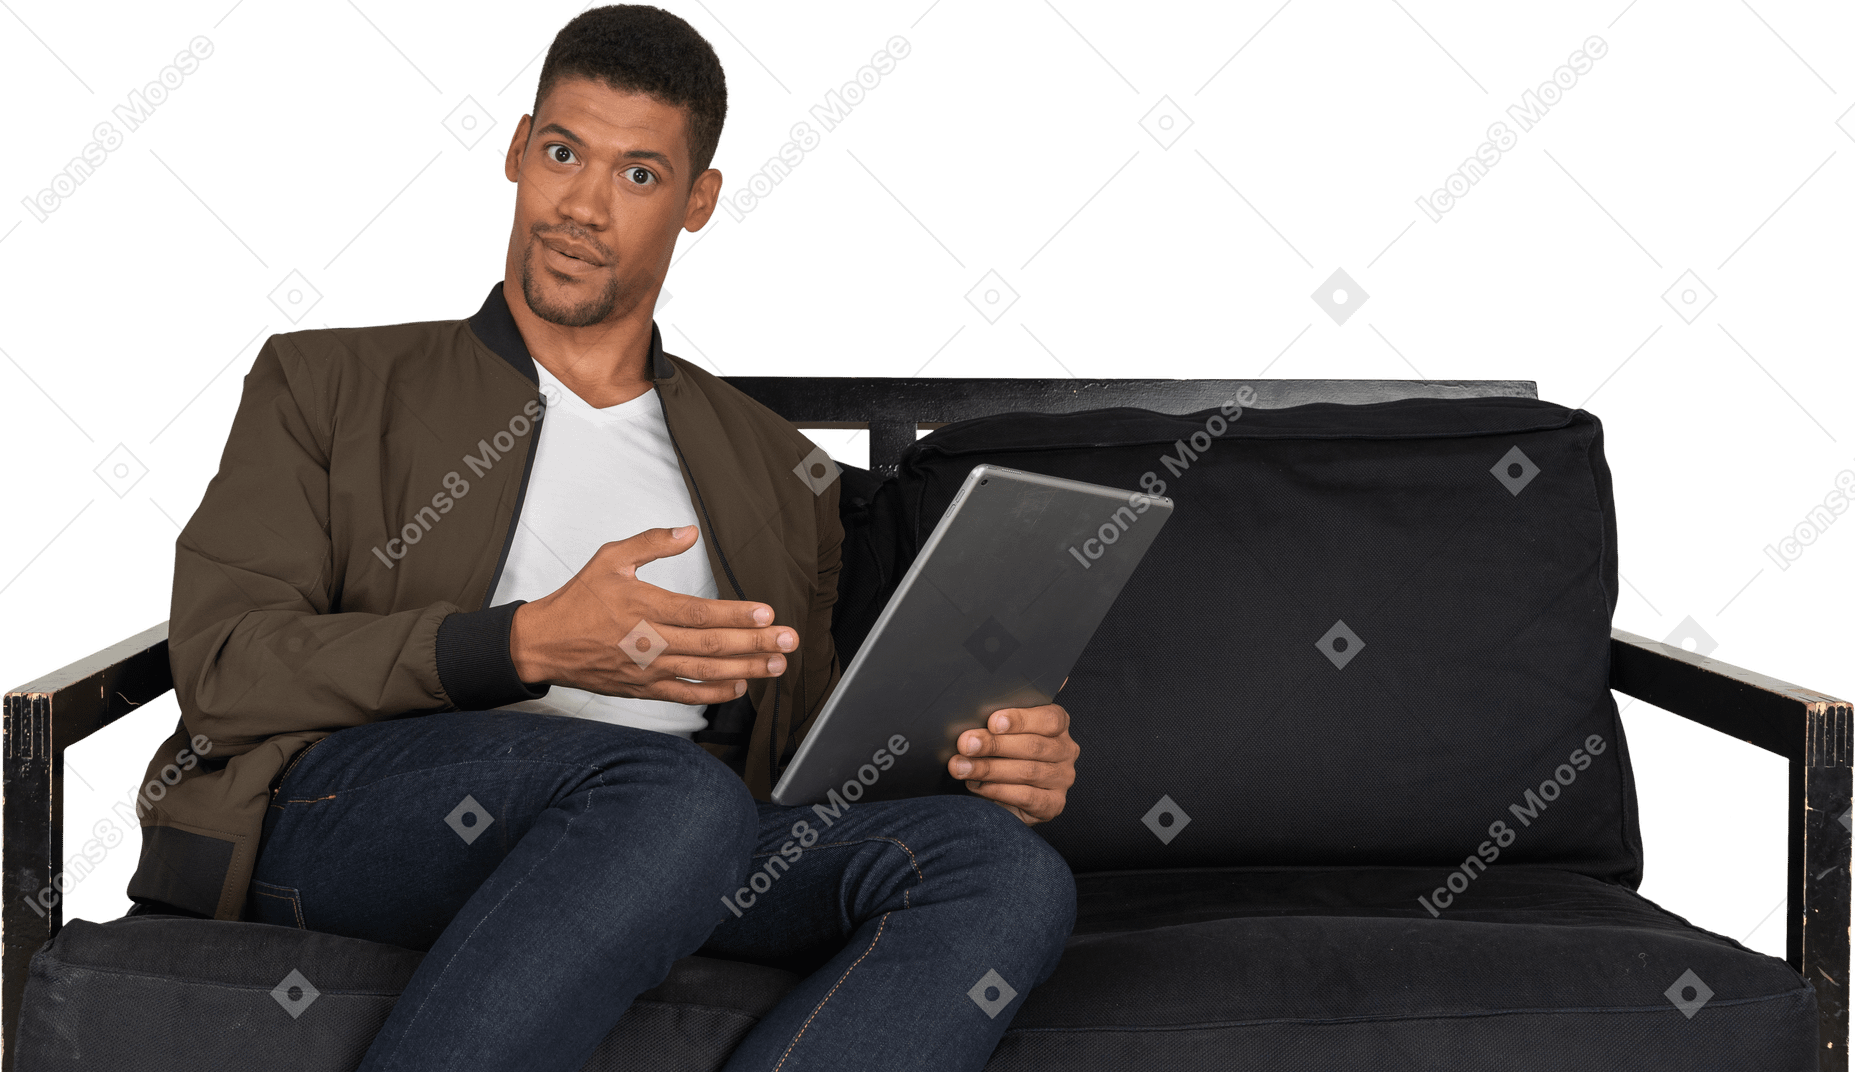 Vista frontal de um jovem chocado sentado em um sofá enquanto assiste ao tablet